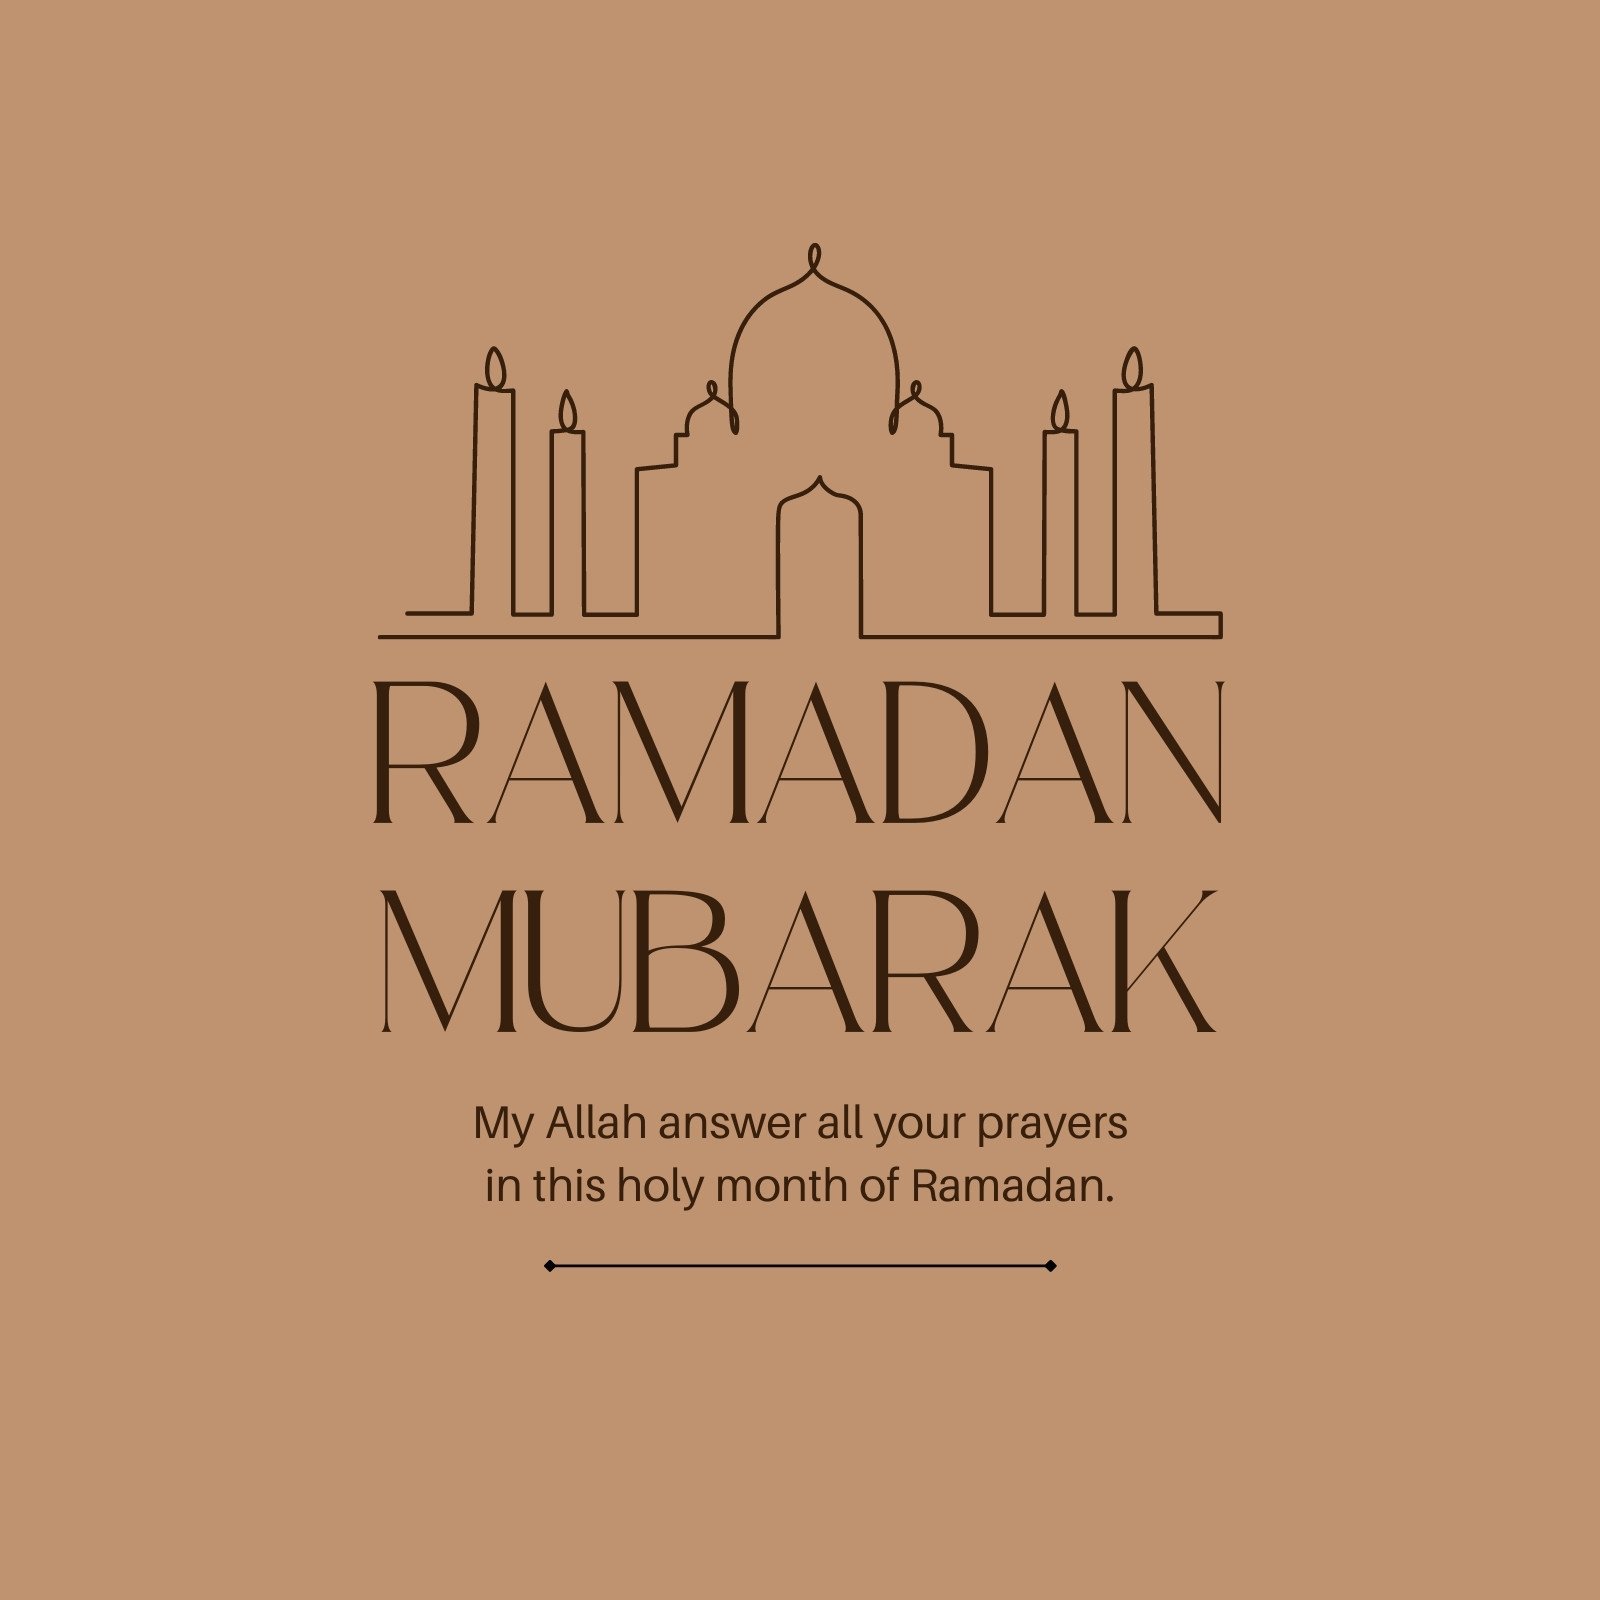 Ramadan Mubarak đang đến gần và hãy chuẩn bị cho những bức ảnh đáng nhớ với bộ mẫu Instagram miễn phí và tùy chỉnh được. Tận dụng những dấu ấn đặc trưng của lễ hội này trên tài khoản Instagram của bạn với những mẫu câu chuyện chúc mừng thật đặc sắc.